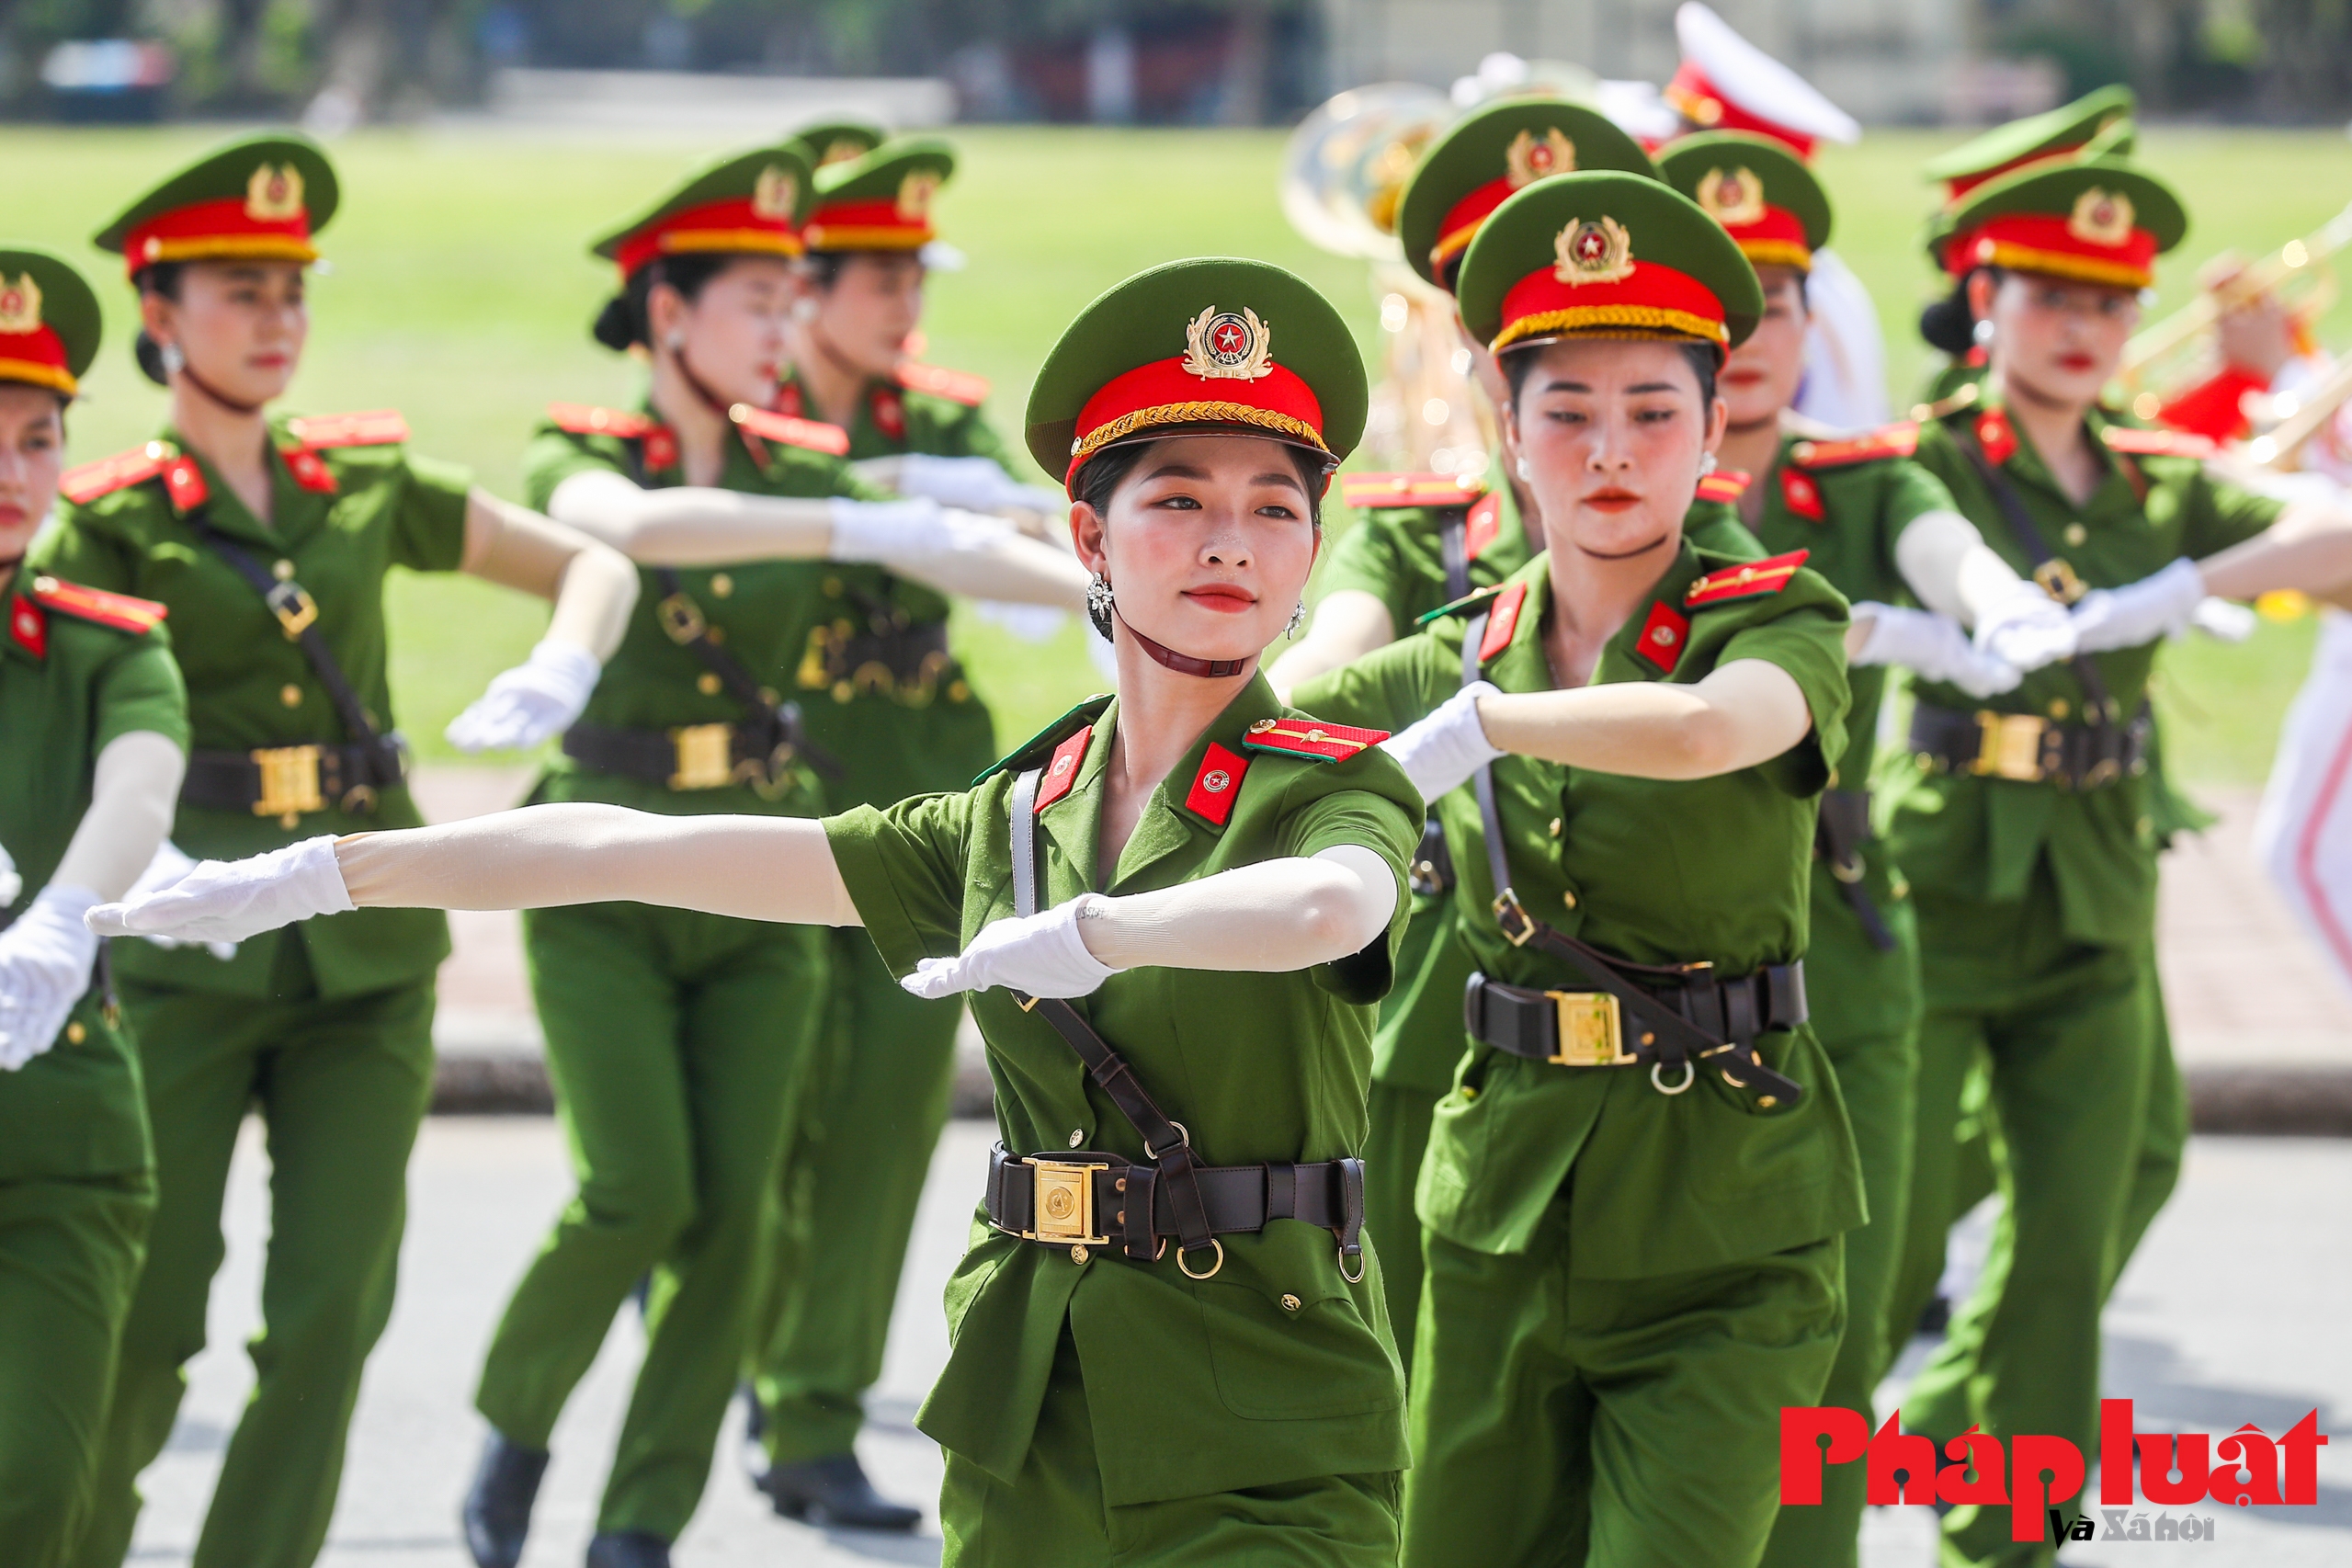 Tổng duyệt chương trình của Đoàn nhạc Cảnh sát Việt Nam